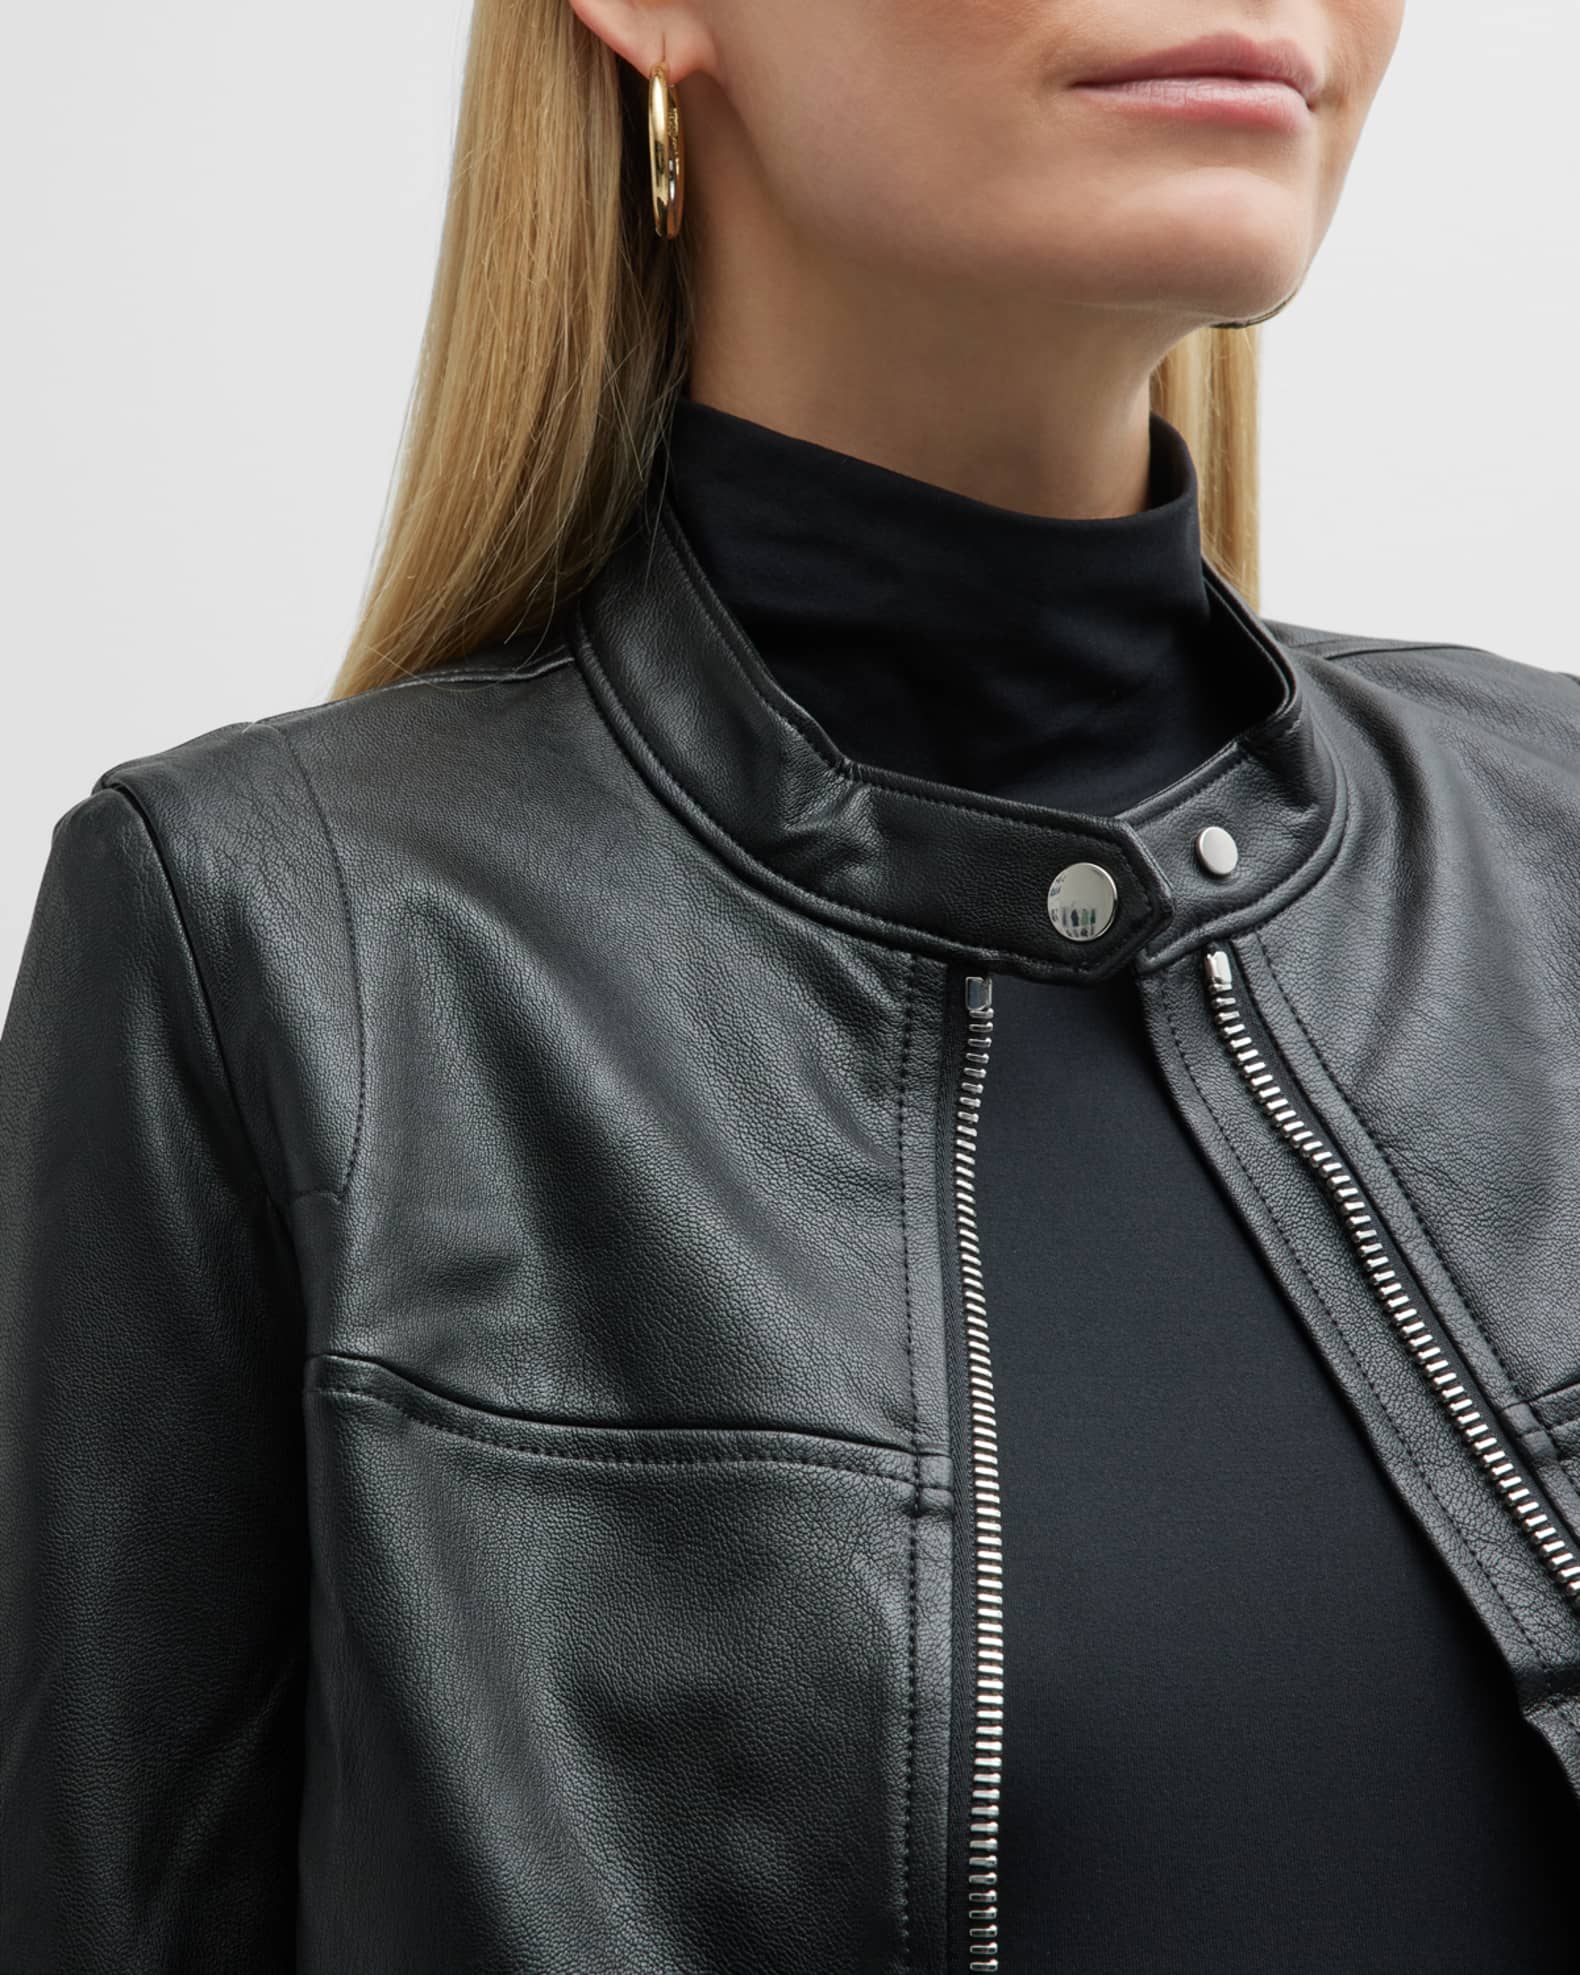 Leather-Like Moto Jacket